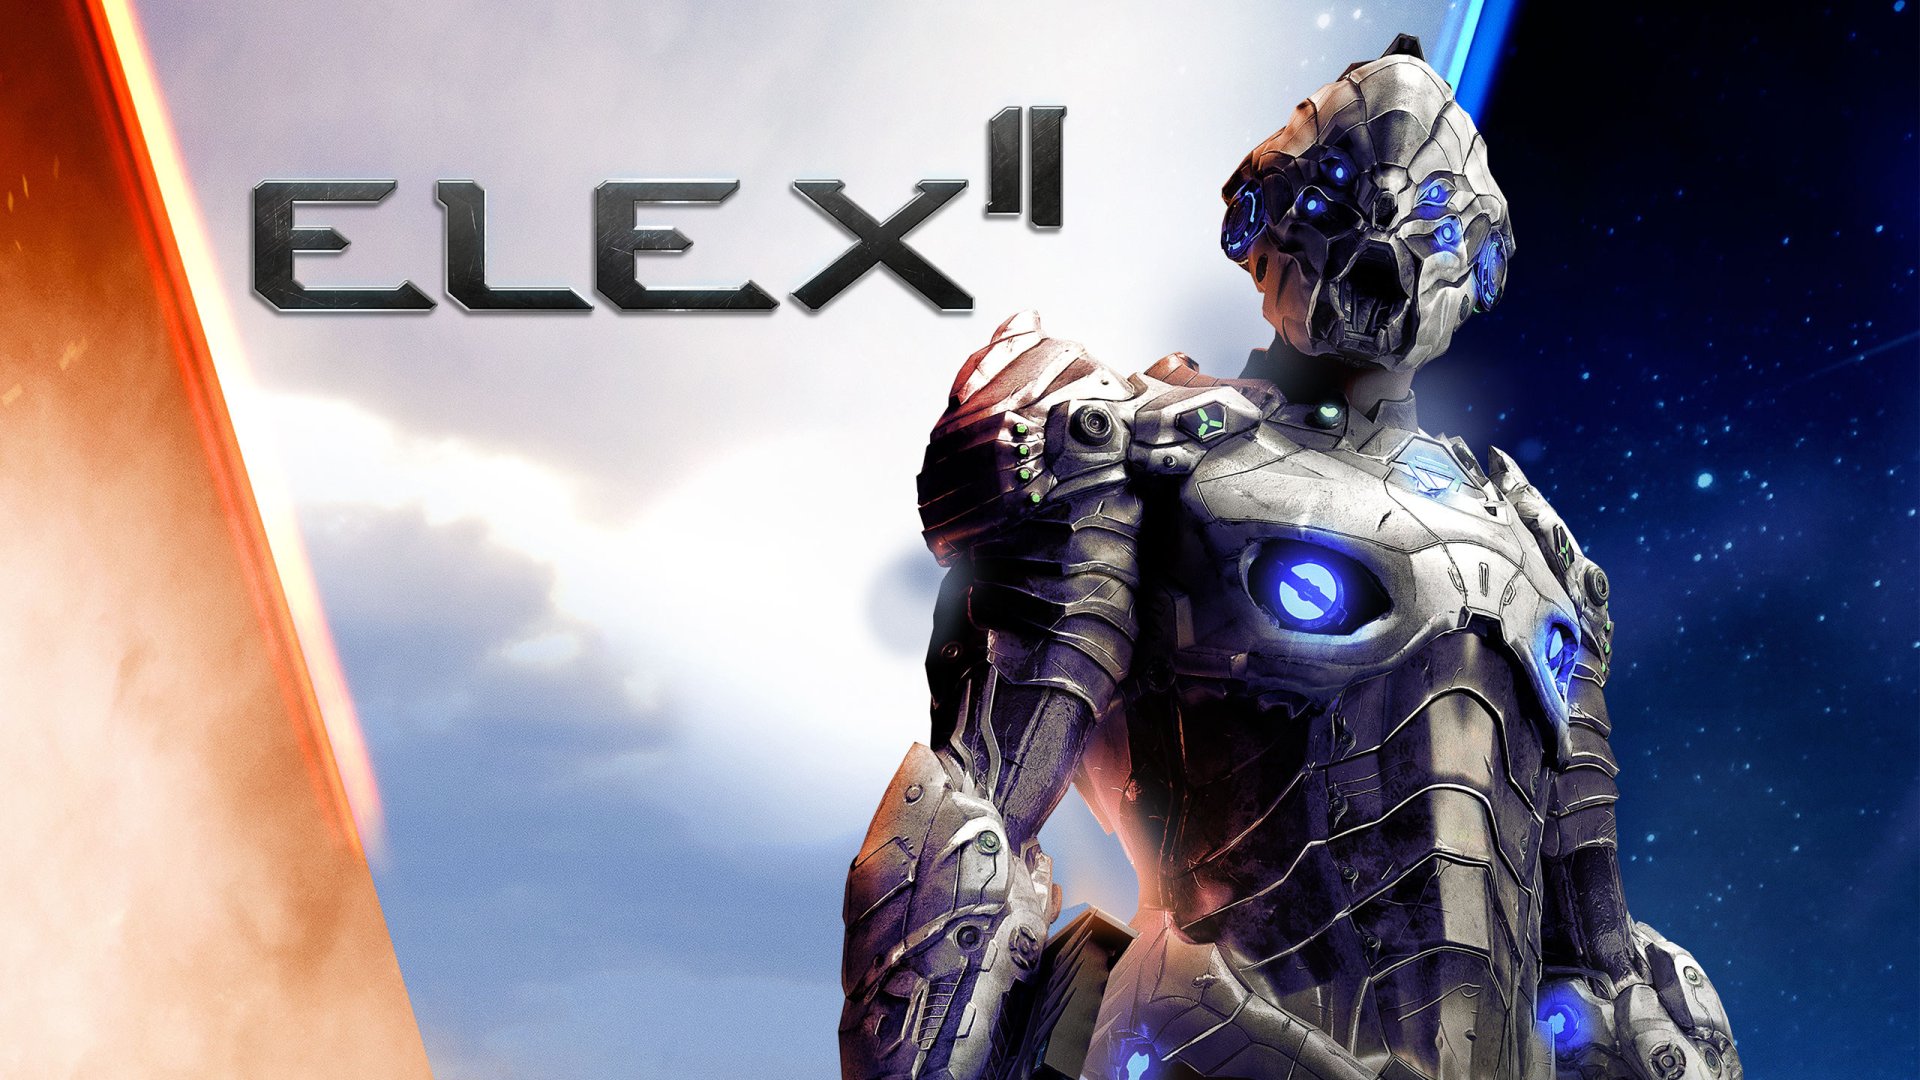 ELEX II feature